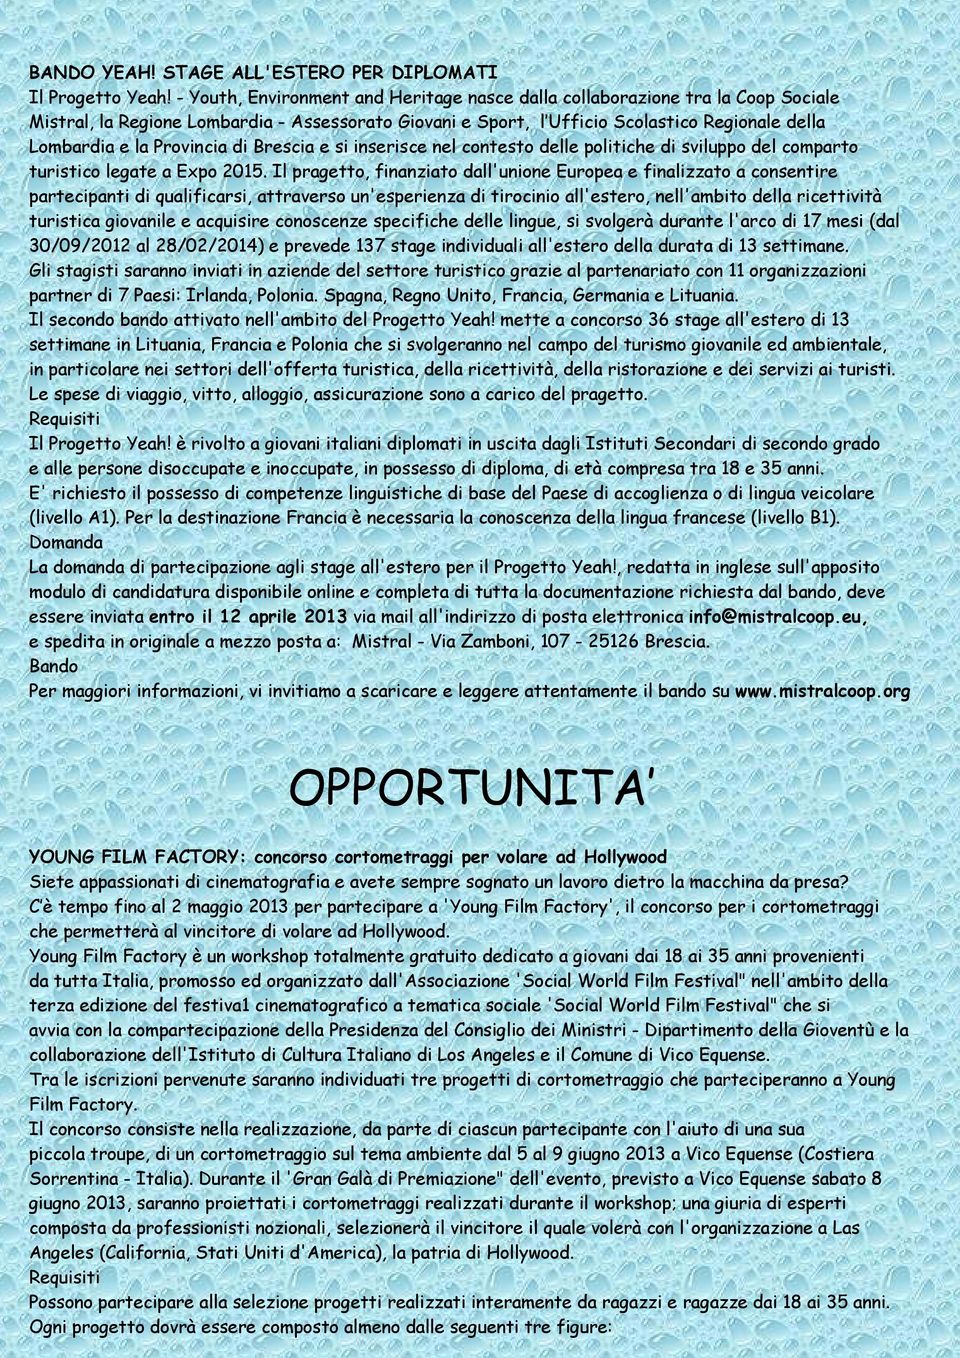 Provincia di Brescia e si inserisce nel contesto delle politiche di sviluppo del comparto turistico legate a Expo 2015.